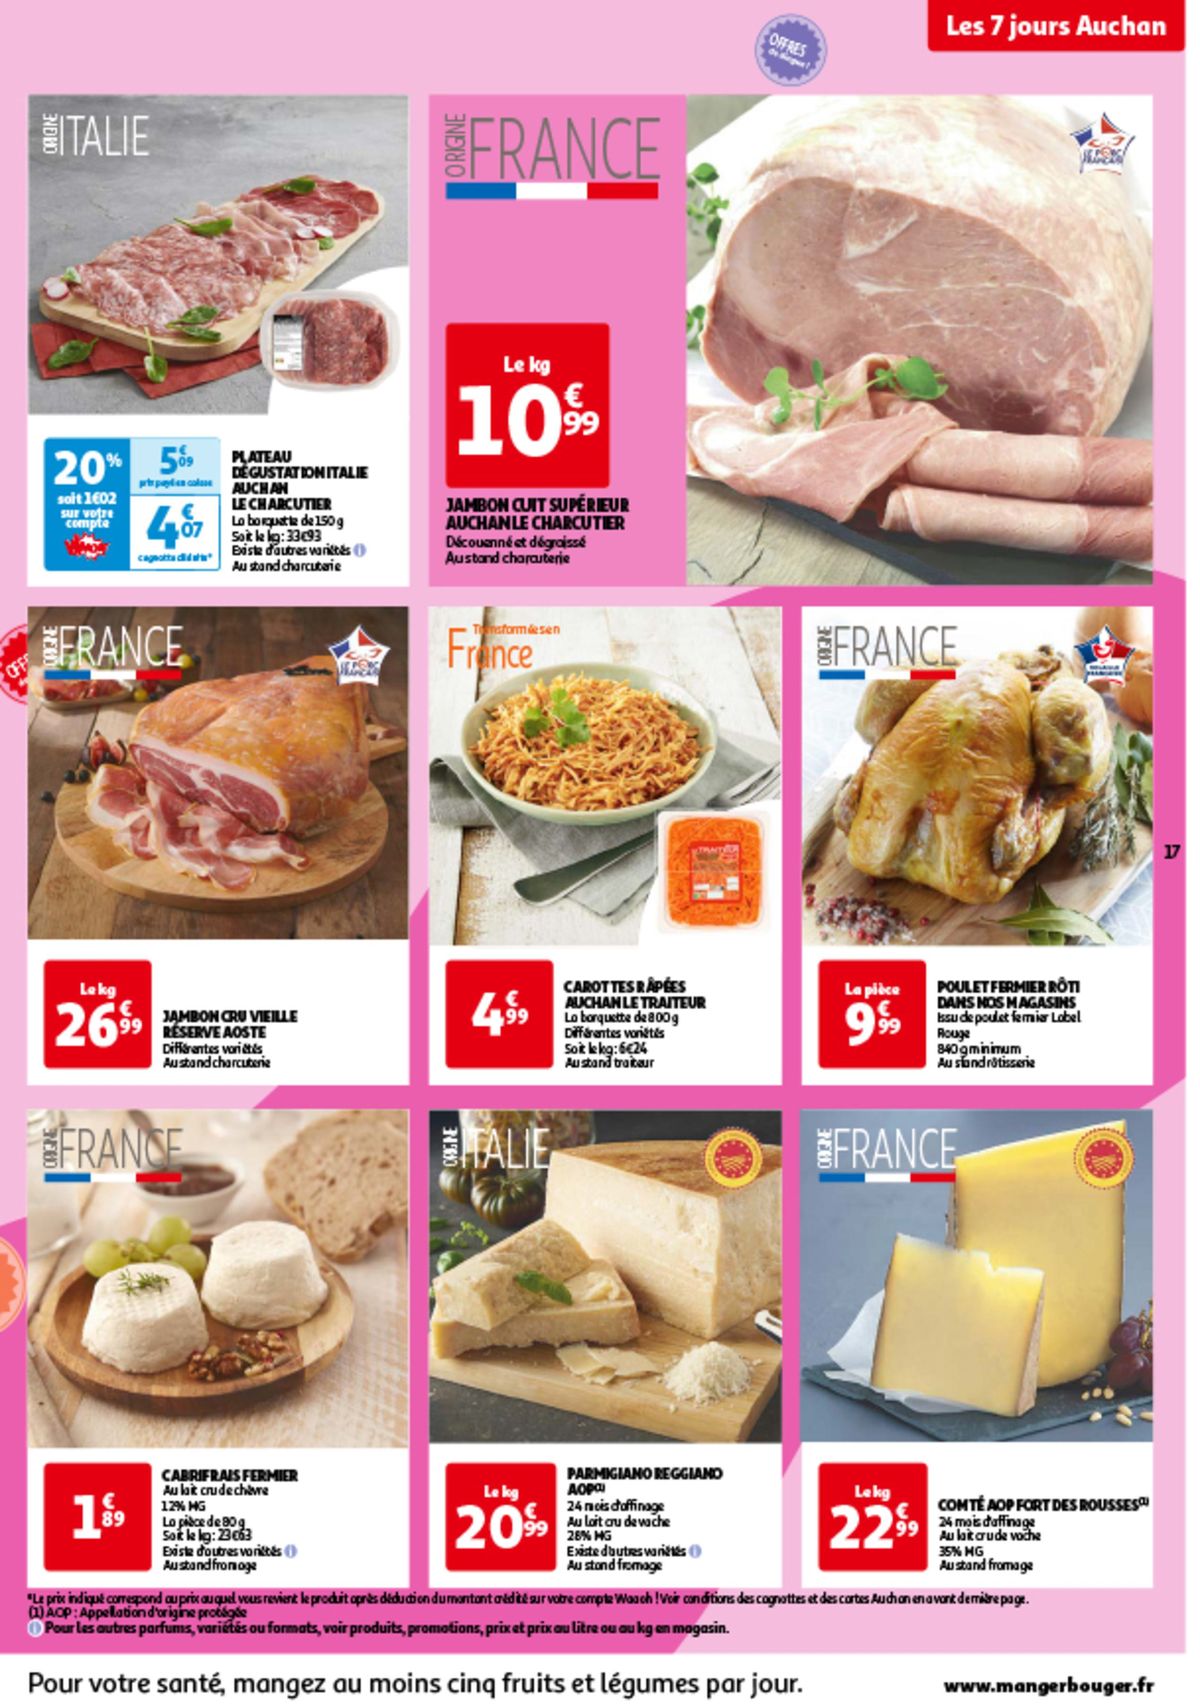 Catalogue Les 7 jours Auchan, c'est maintenant !, page 00017